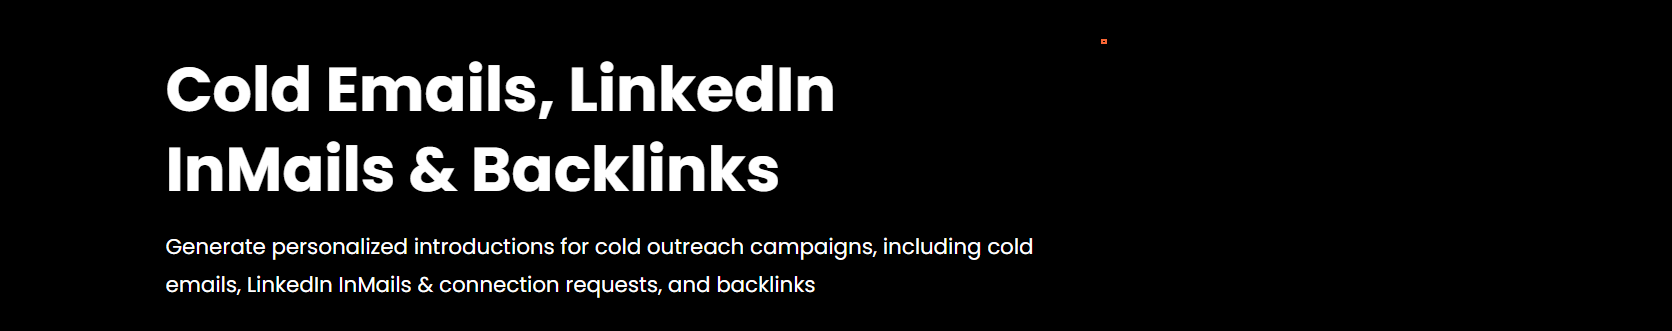 Cold-Emails-LinkedIn-emails-Backlinks